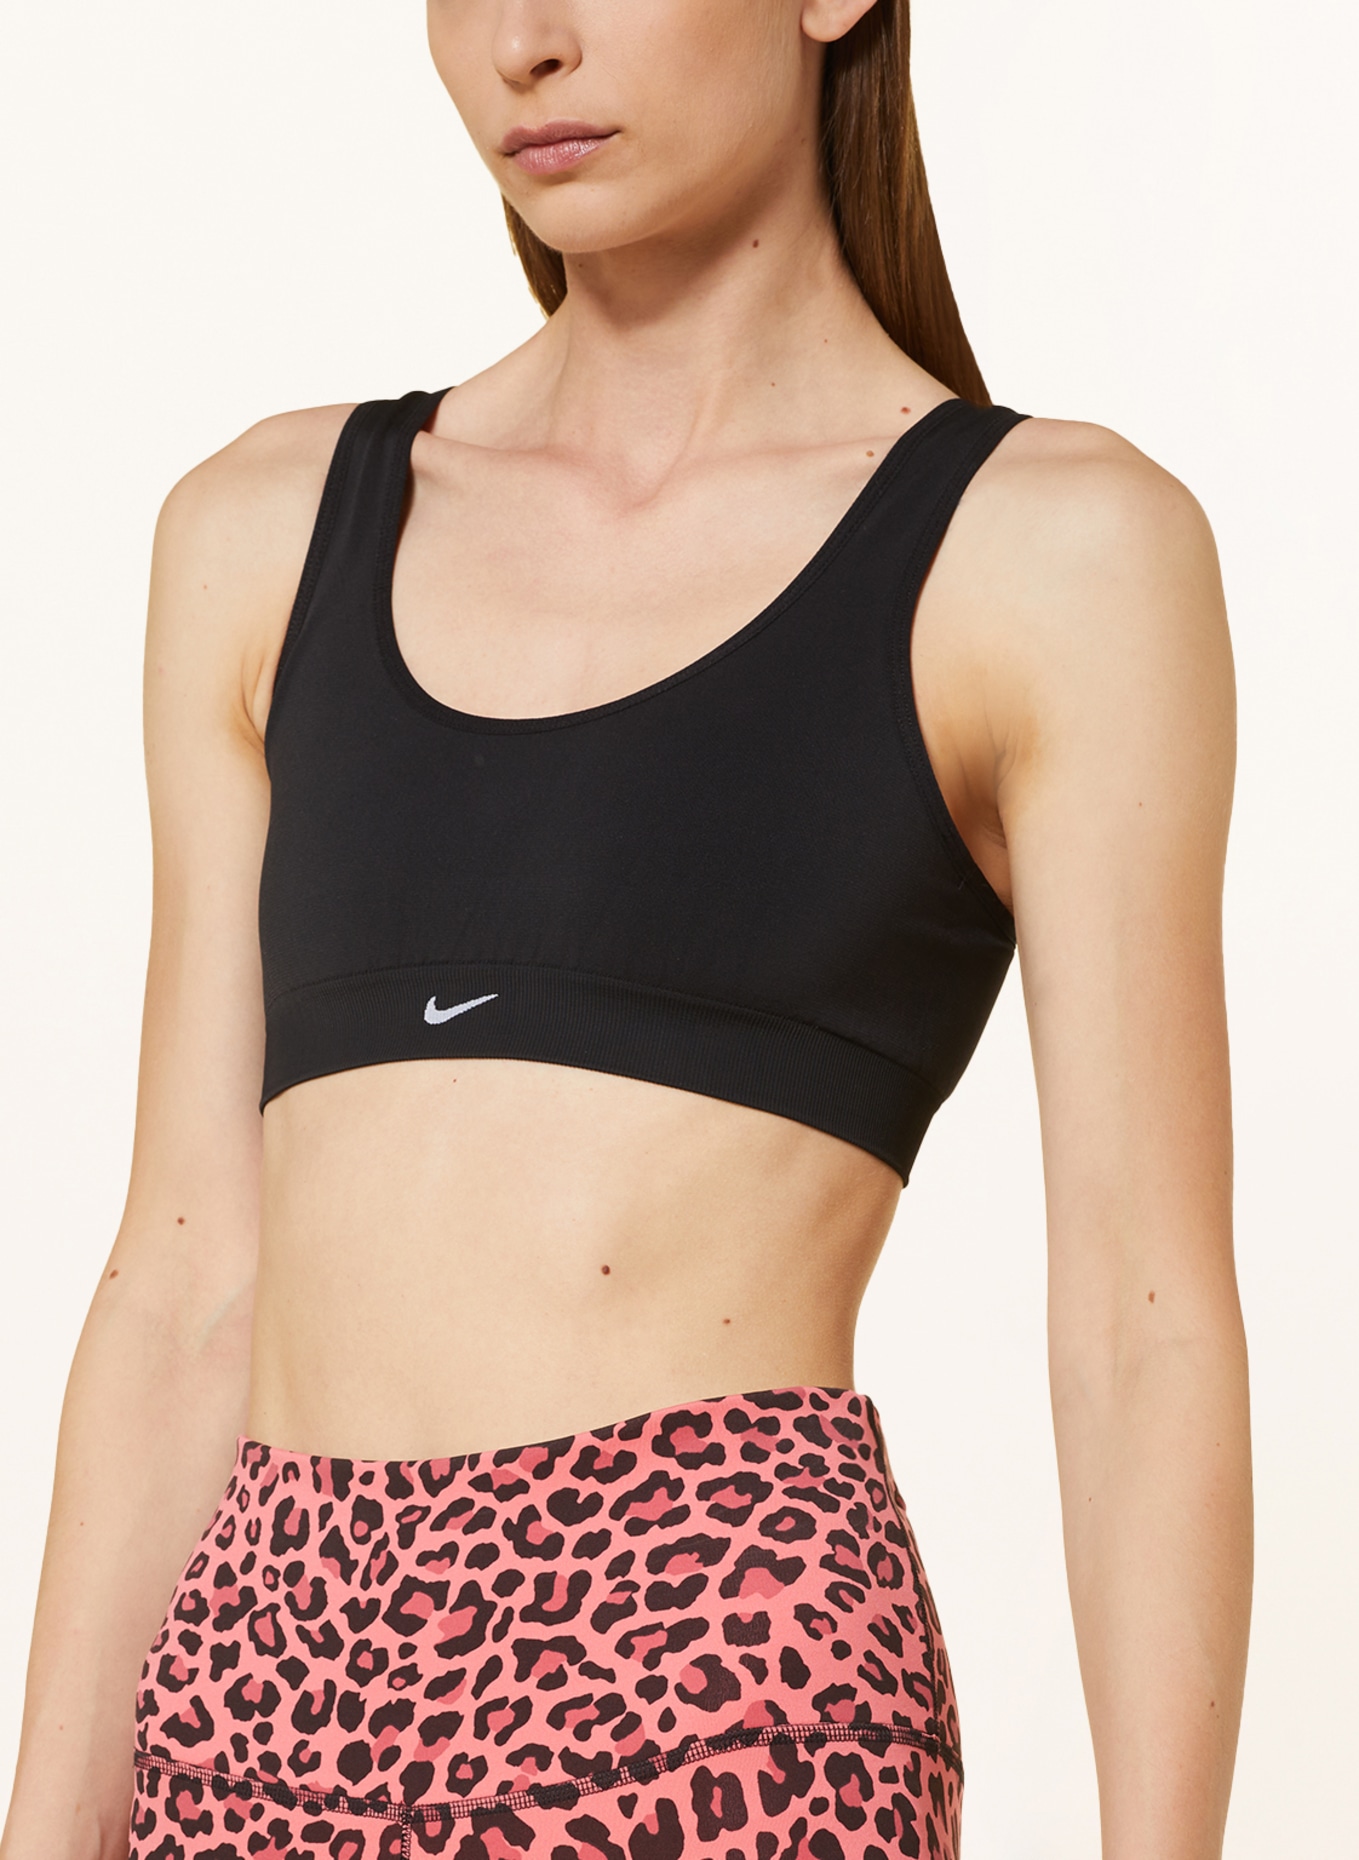 Nike Sports bra ALATE SEAMLESS in black